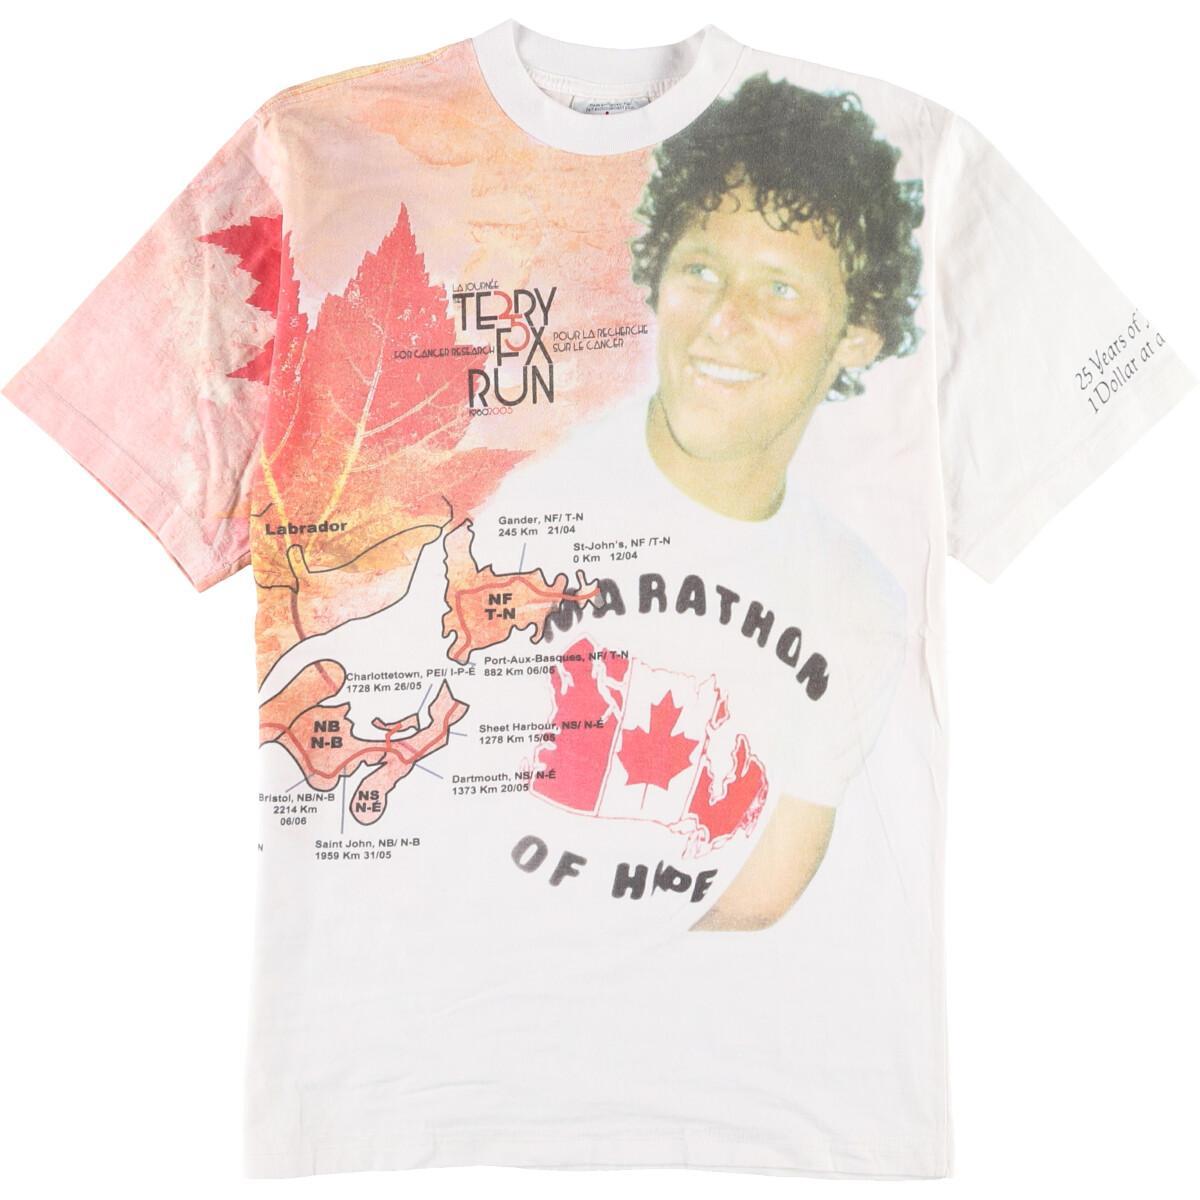 Terry Fox テリーフォックス 一巻印刷tティーシャツ カナダ製 メンズm Eaa1690 中古 Terry Fox テリーフォックス 巻きプリントtシャツ カナダ製 メンズm Klubwino Pl